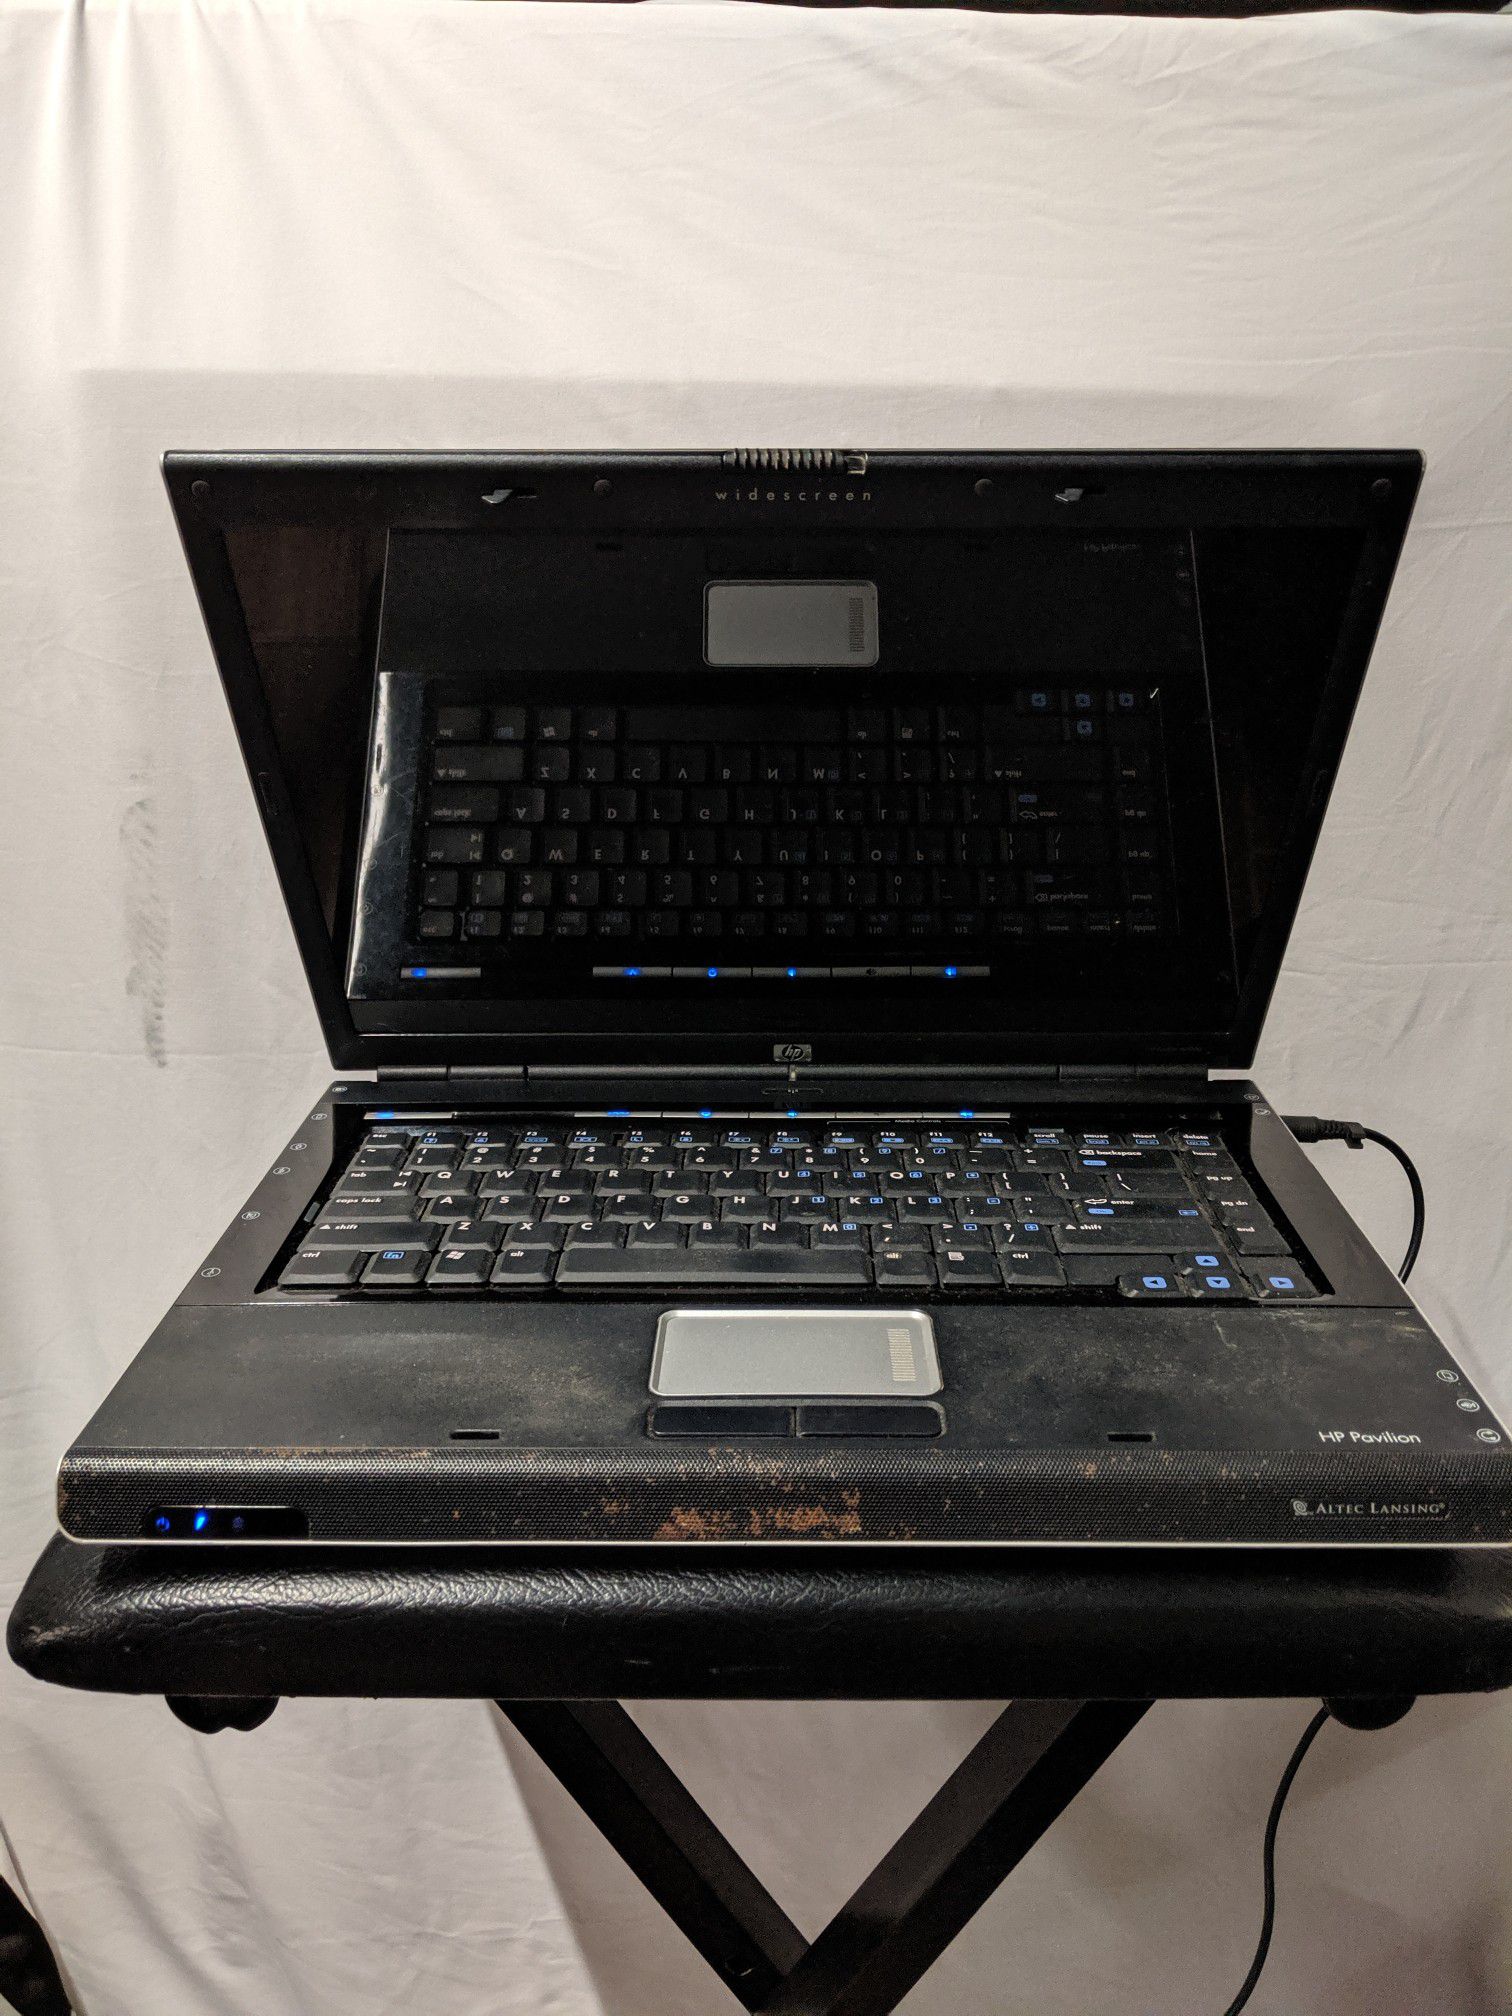 HP Pavilion dv5 Notebook Laptop - Parts/Repair